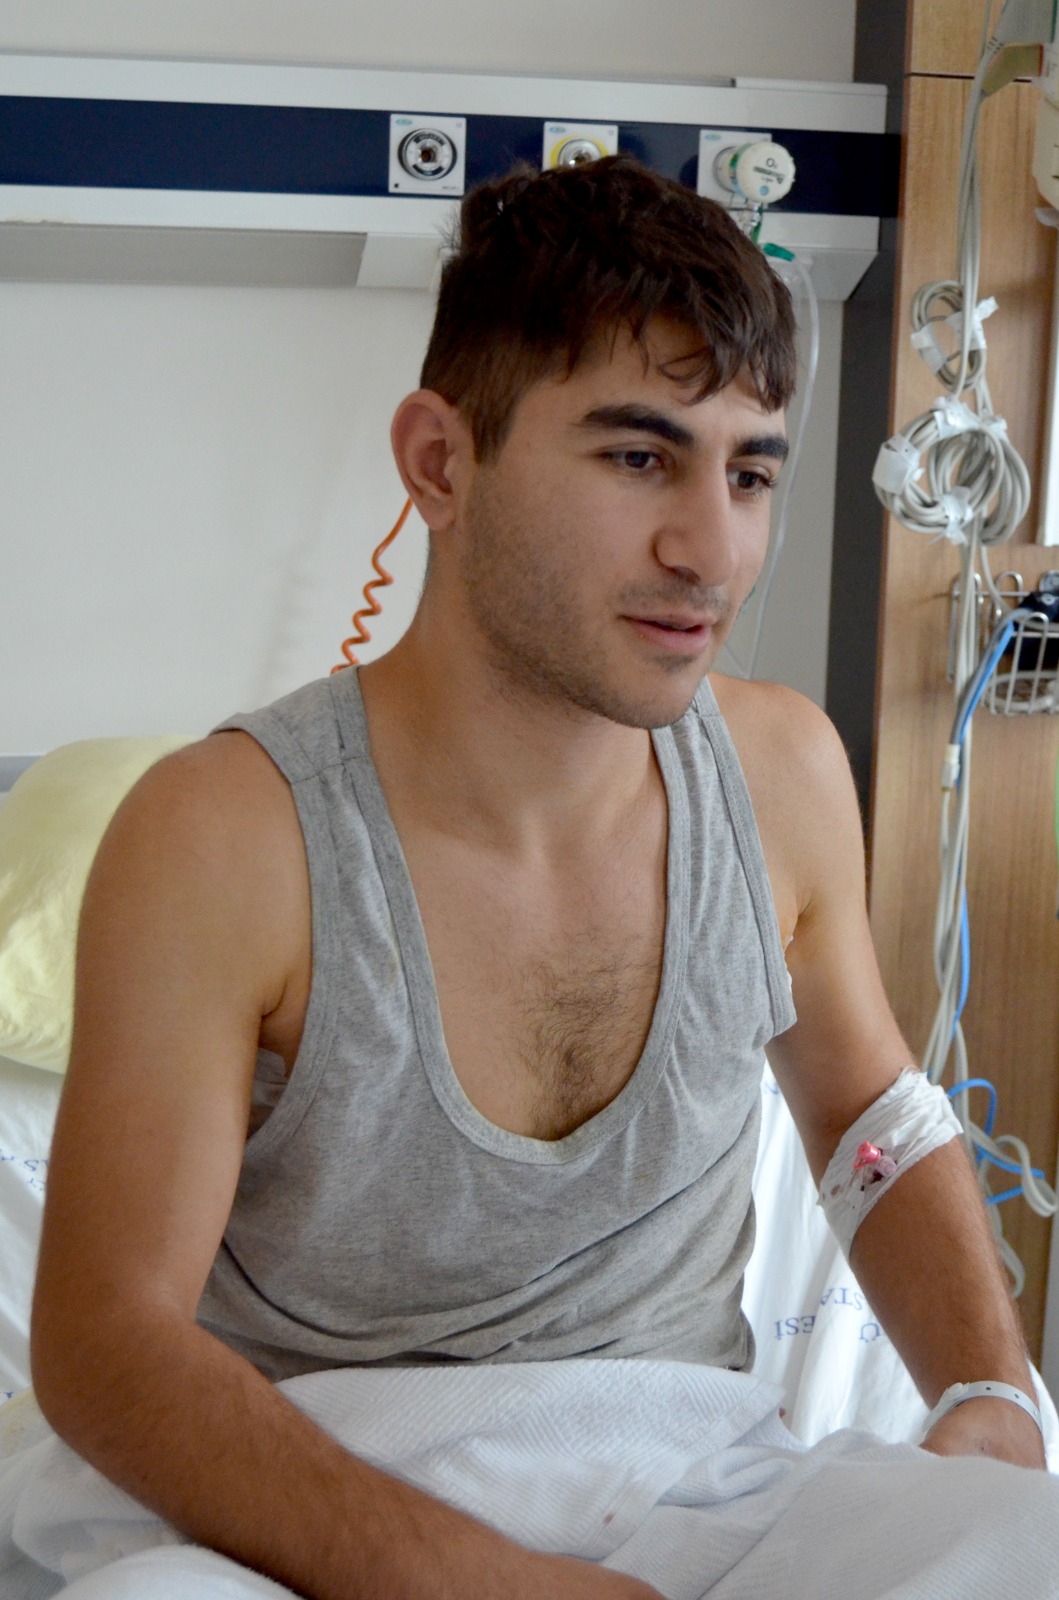 Gürcü genç hayatını karartan hastalıktan Trabzon'da kurtuldu